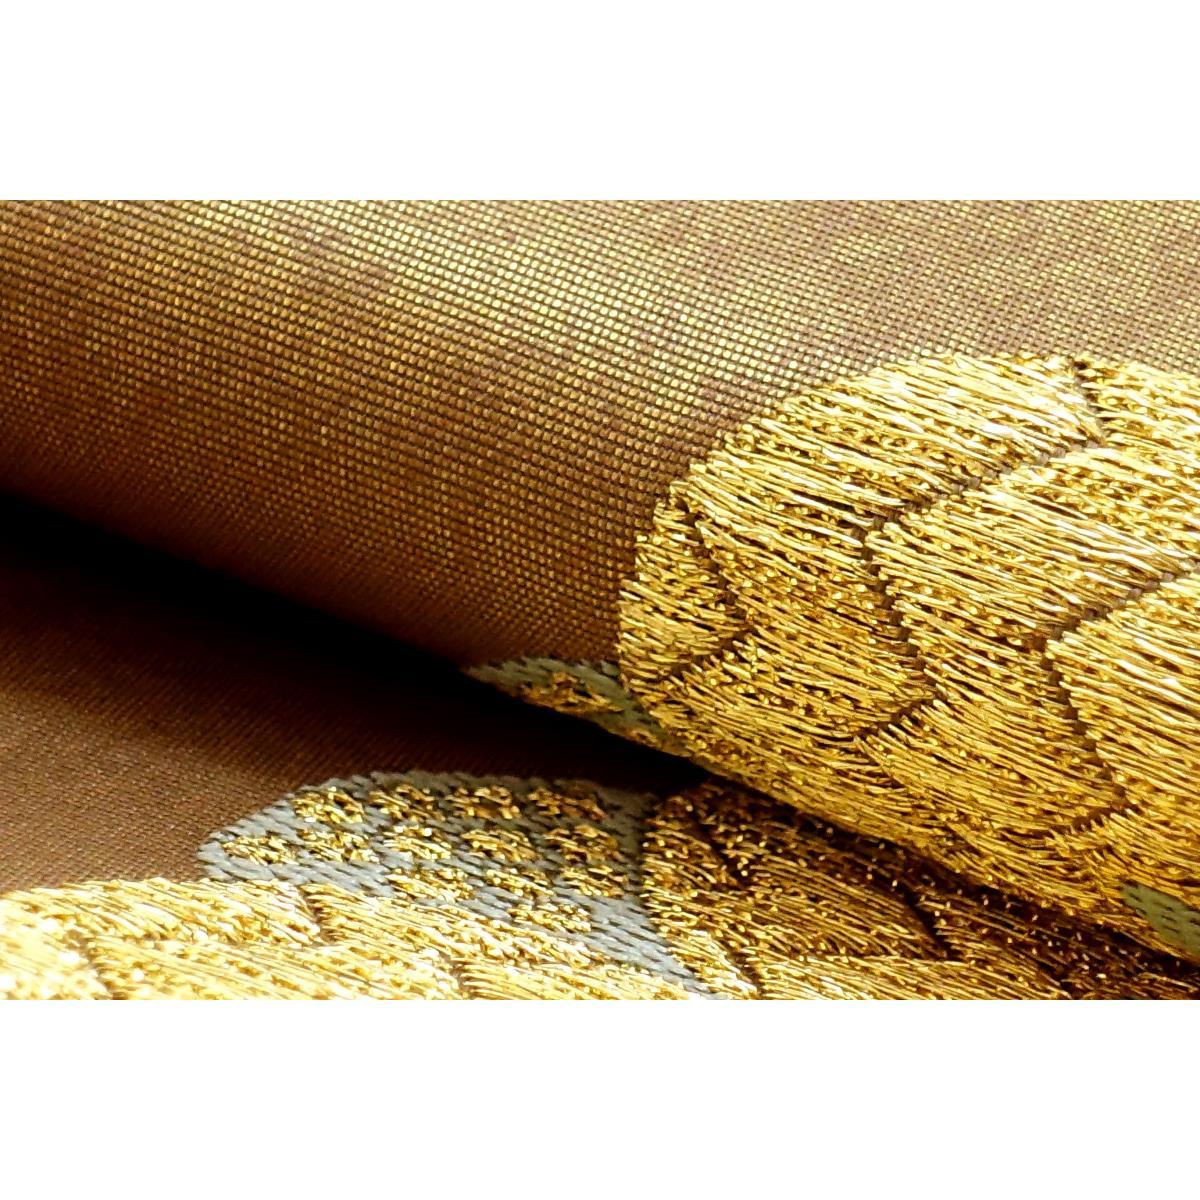 [未使用品] 袋带高岛织物 缎纹组织